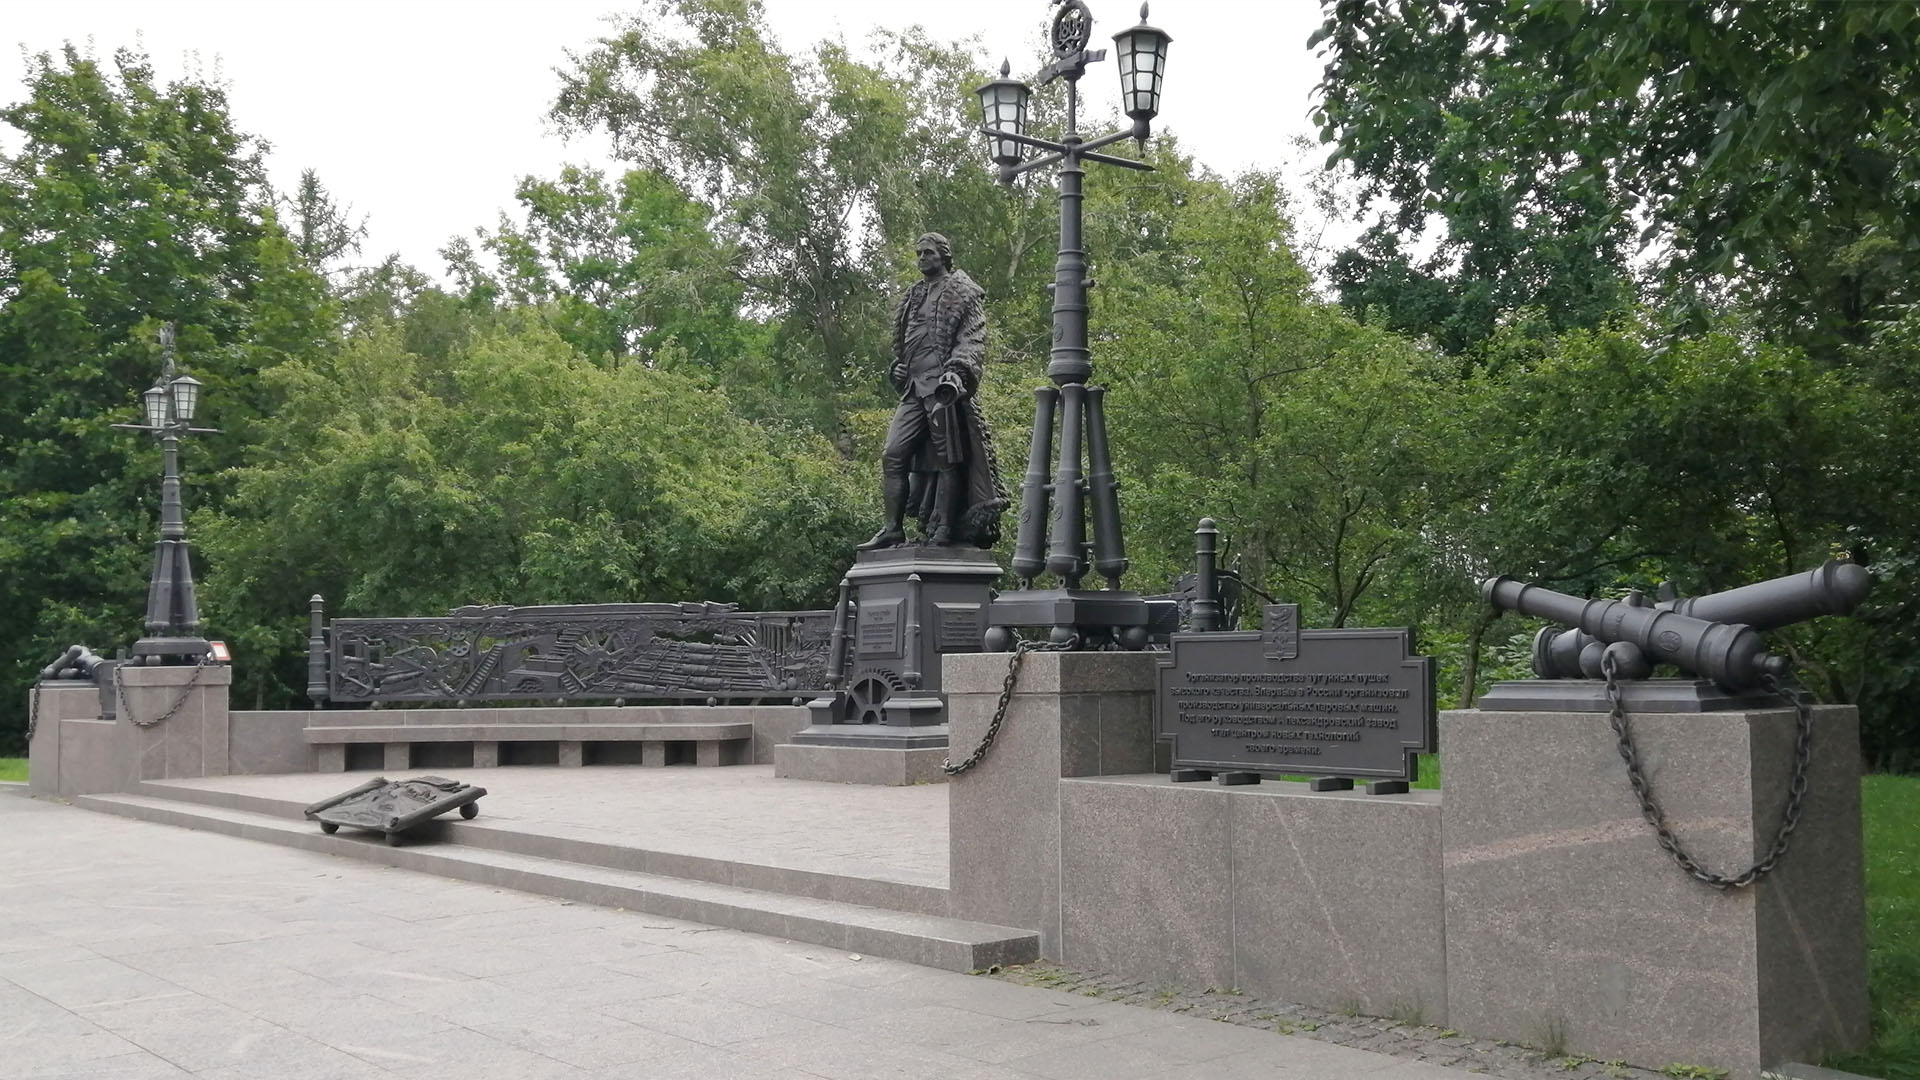 Памятник в комплексе с пушками, фонарями и мемориальными досками.